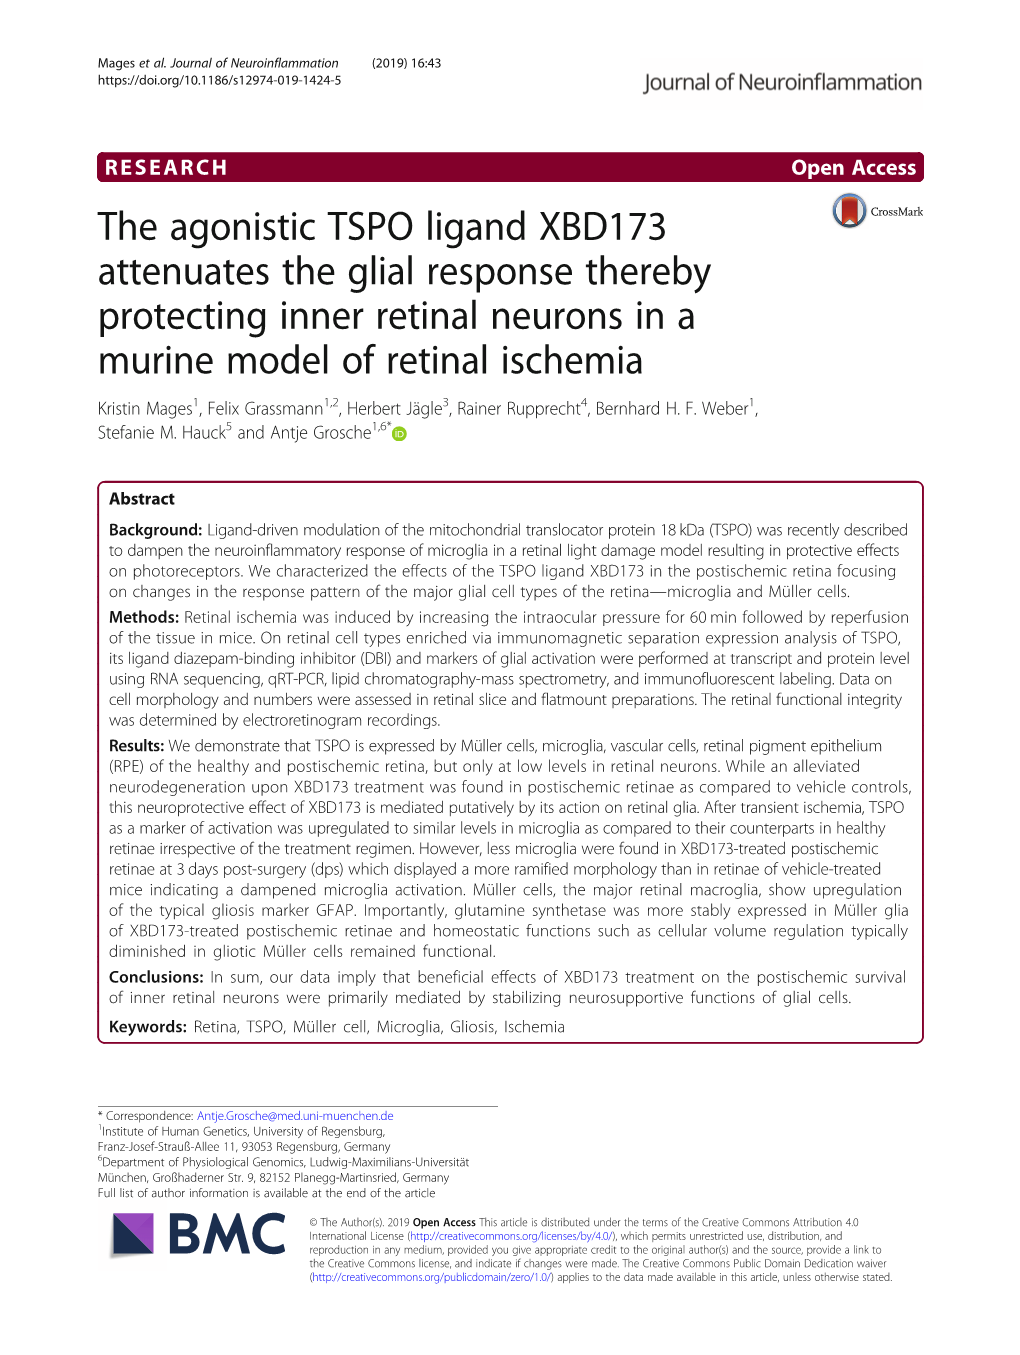 The Agonistic TSPO Ligand XBD173 Attenuates the Glial Response